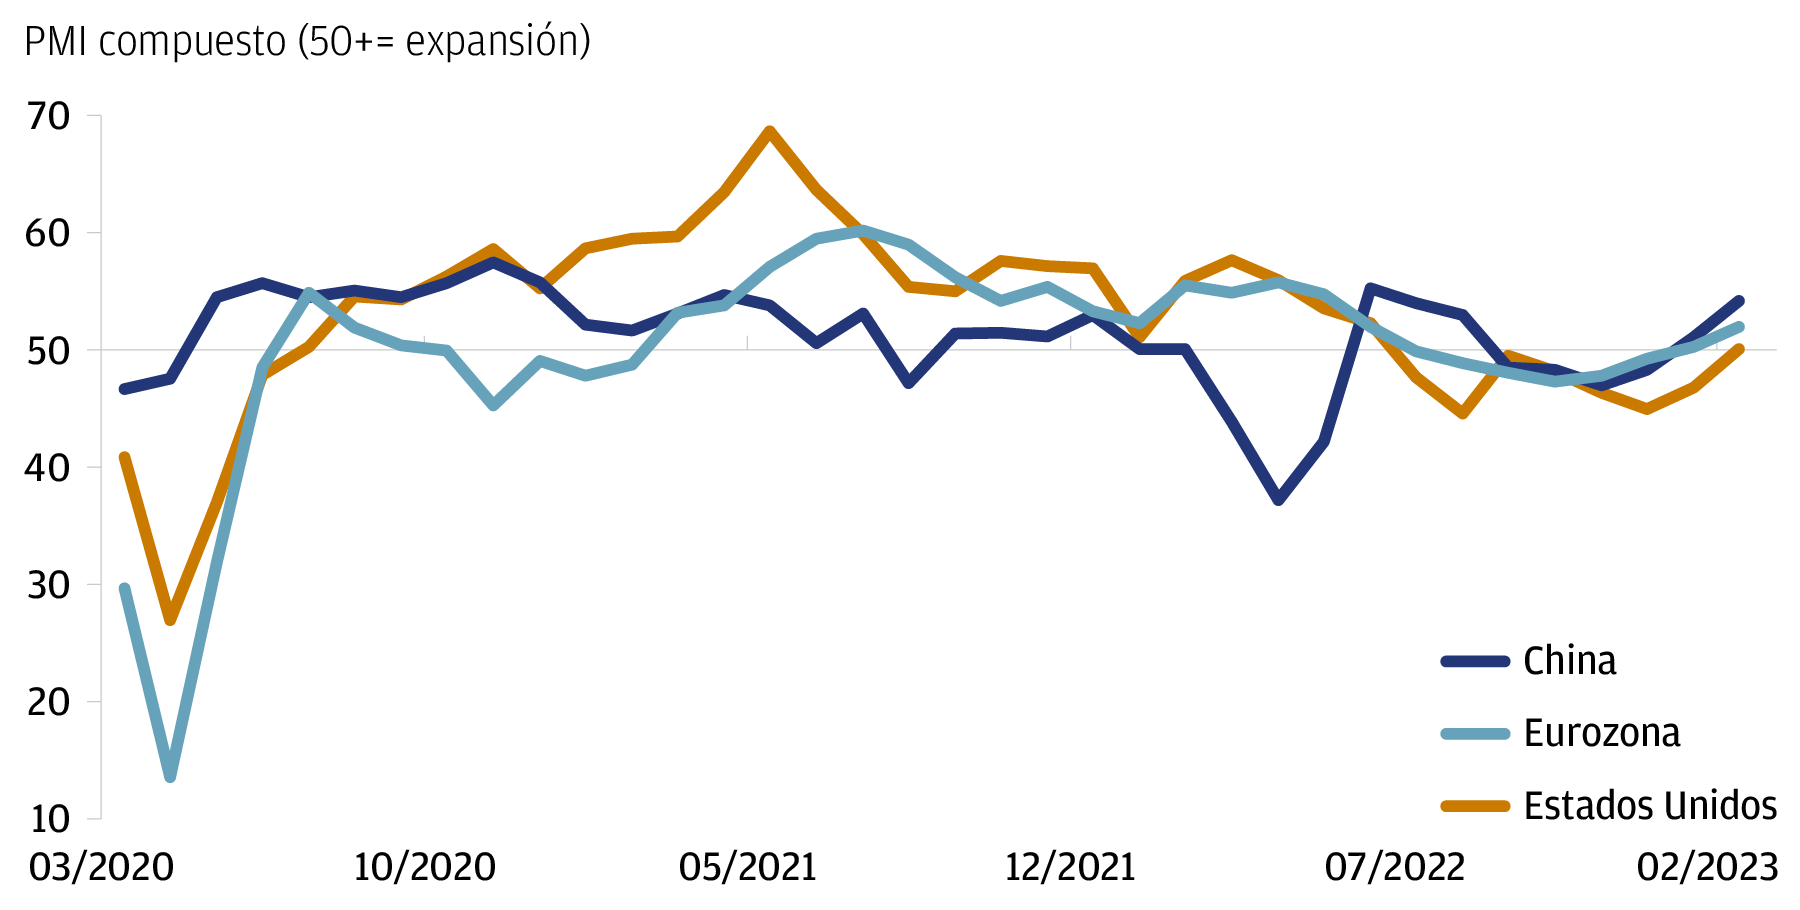 Este gráfico mide la serie temporal del PMI compuesto para Estados Unidos, China y la Eurozona, desde abril de 2020 a febrero de 2023.